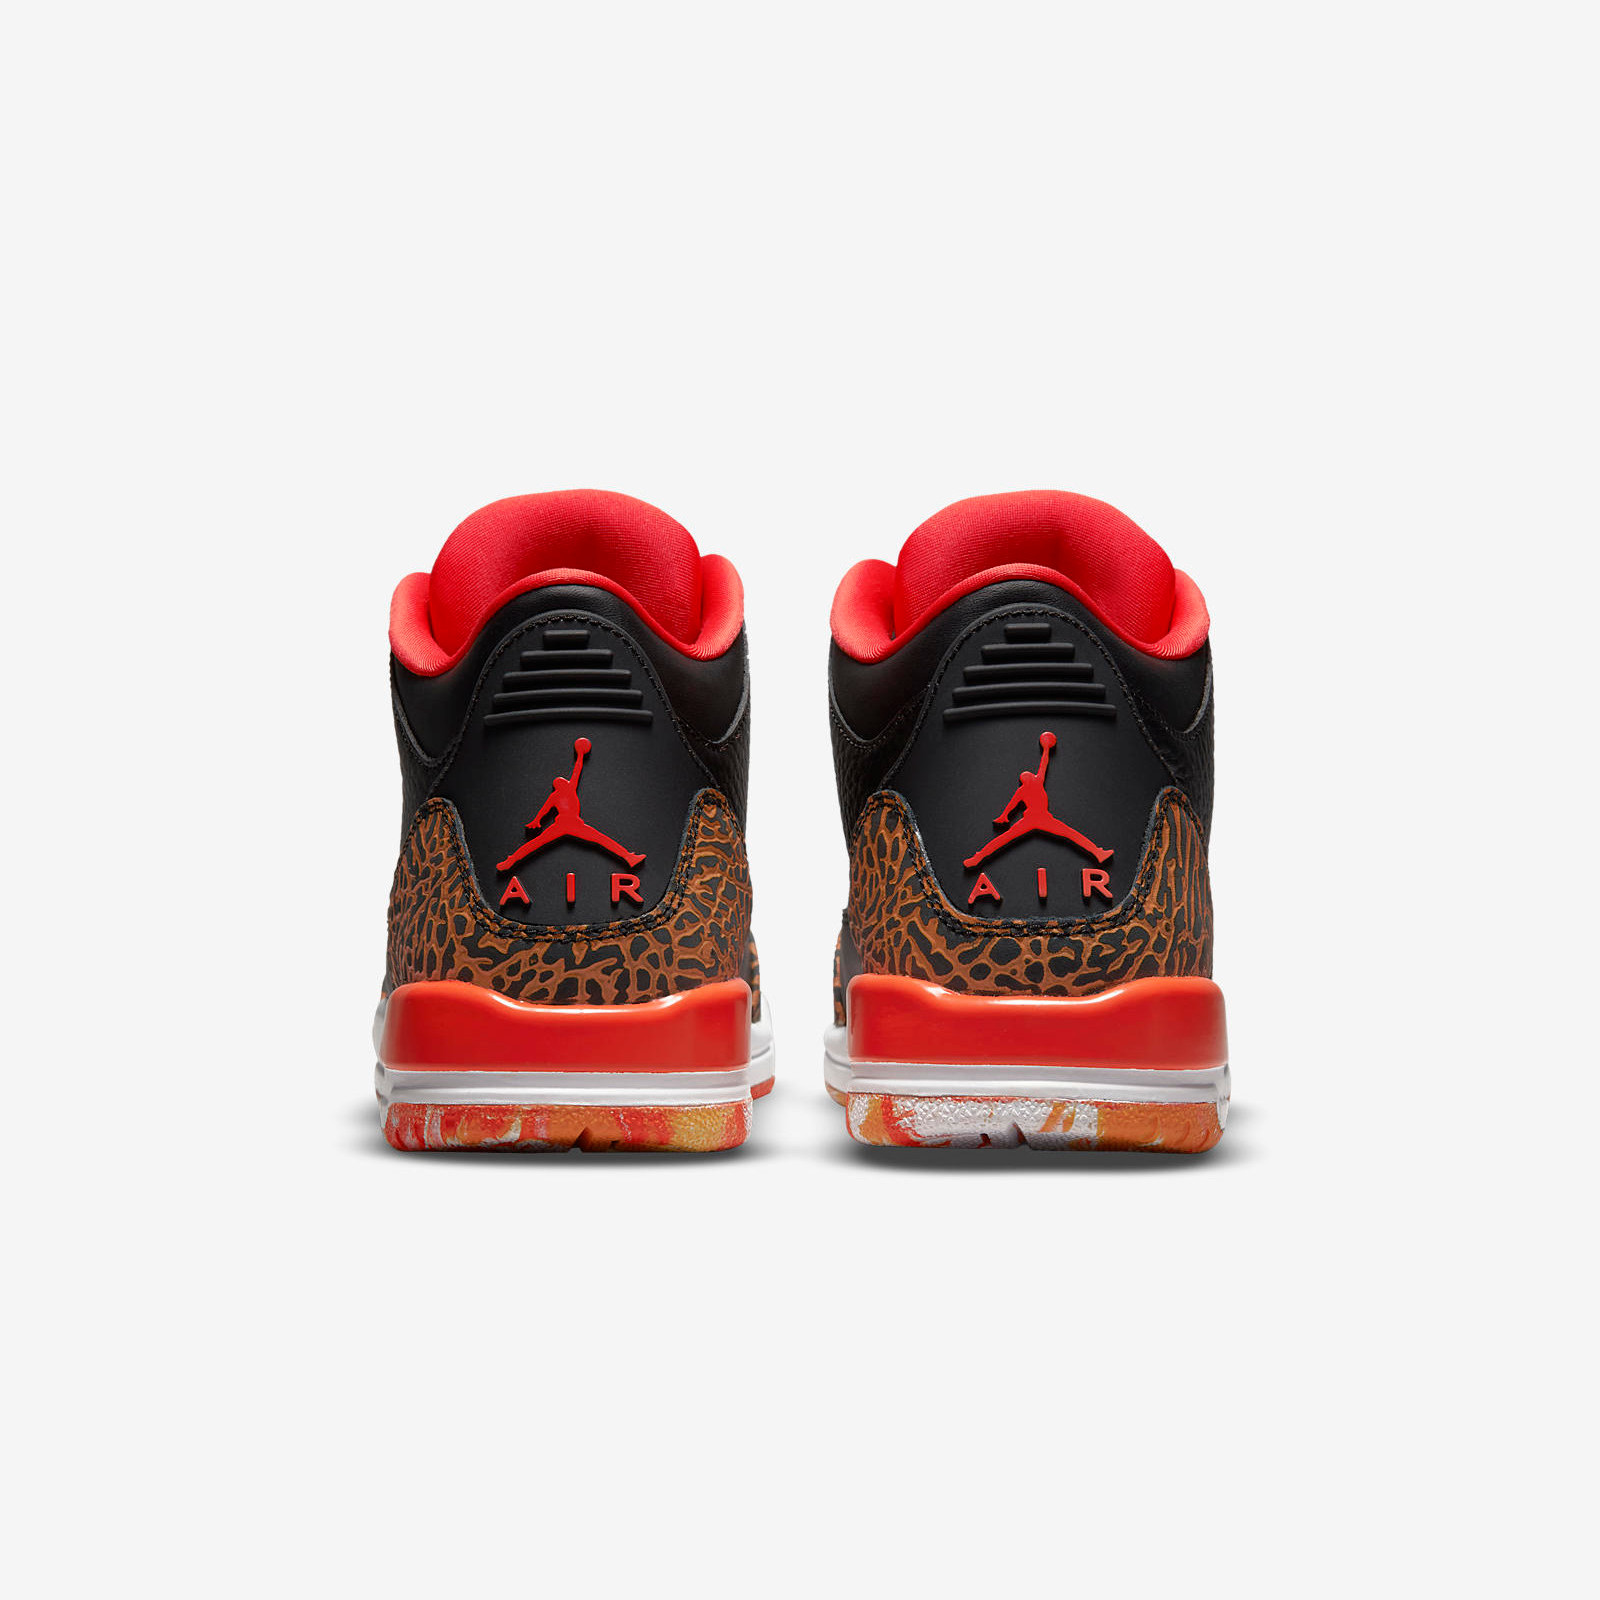 Air Jordan 3 Retro
« Kumquat »